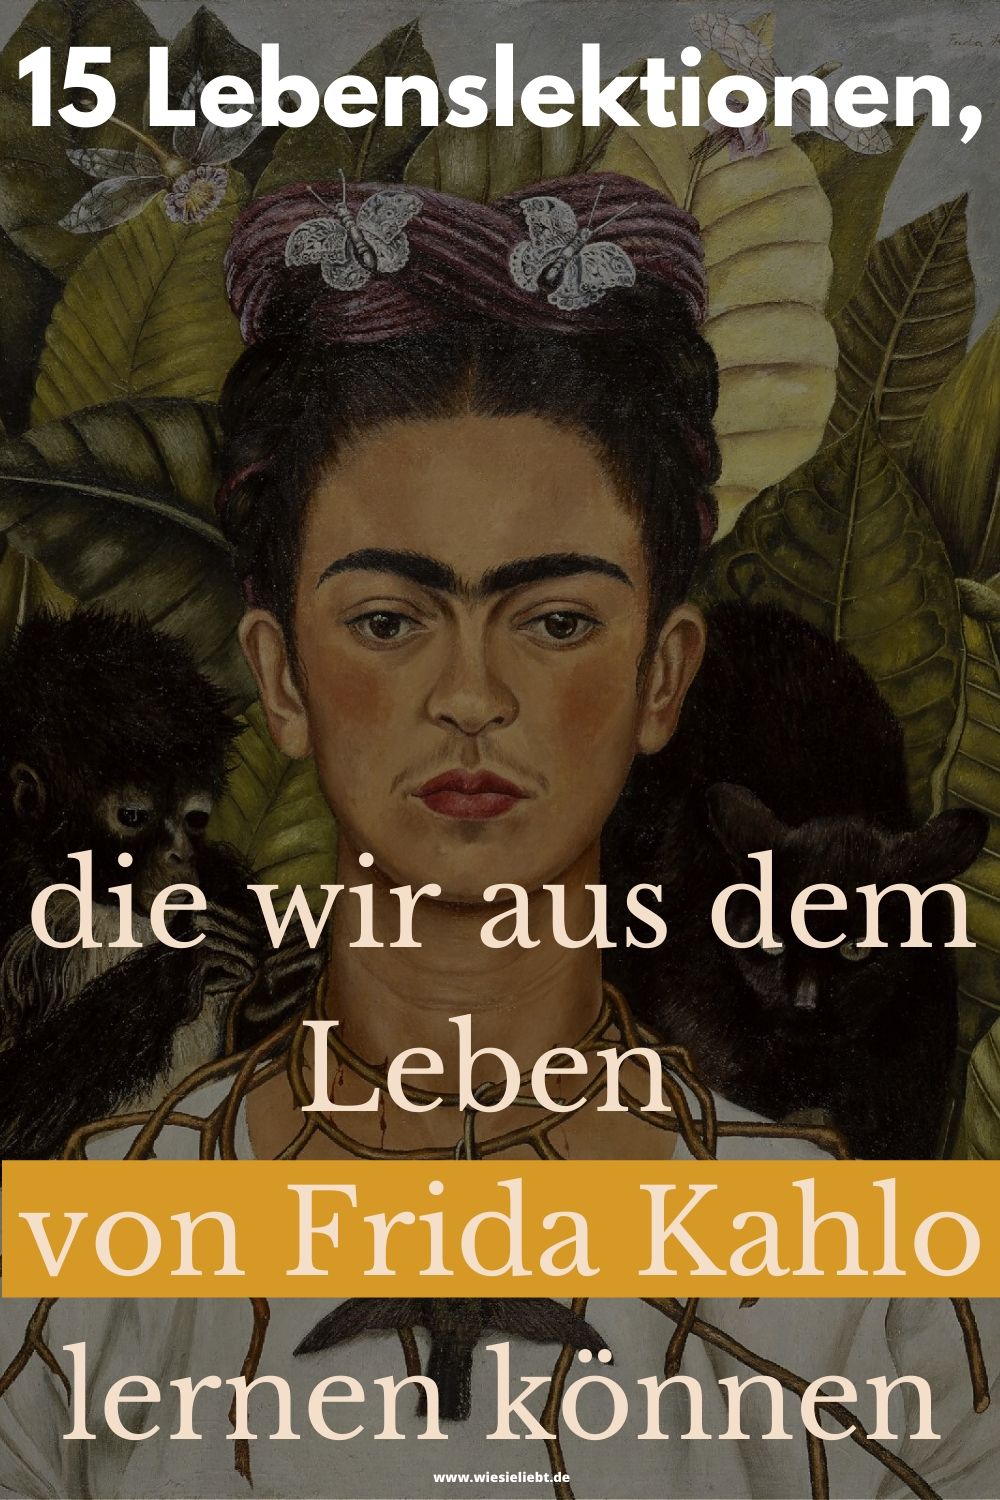 15-Lebenslektionen-die-wir-aus-dem-Leben-von-Frida-Kahlo-lernen-können